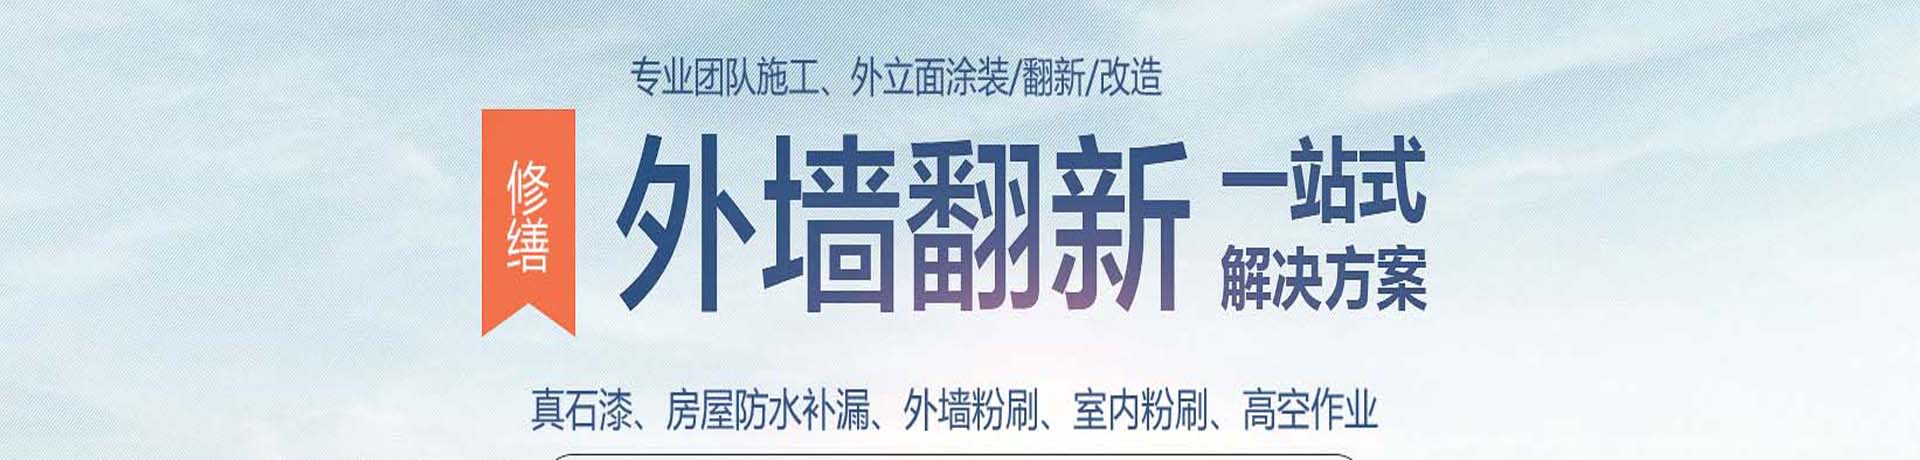 上海外墙高空涂料粉刷,外墙真石漆施工,上海外墙翻新公司,专业的墙面涂刷服务-上海物美环境工程有限公司 - 团队介绍